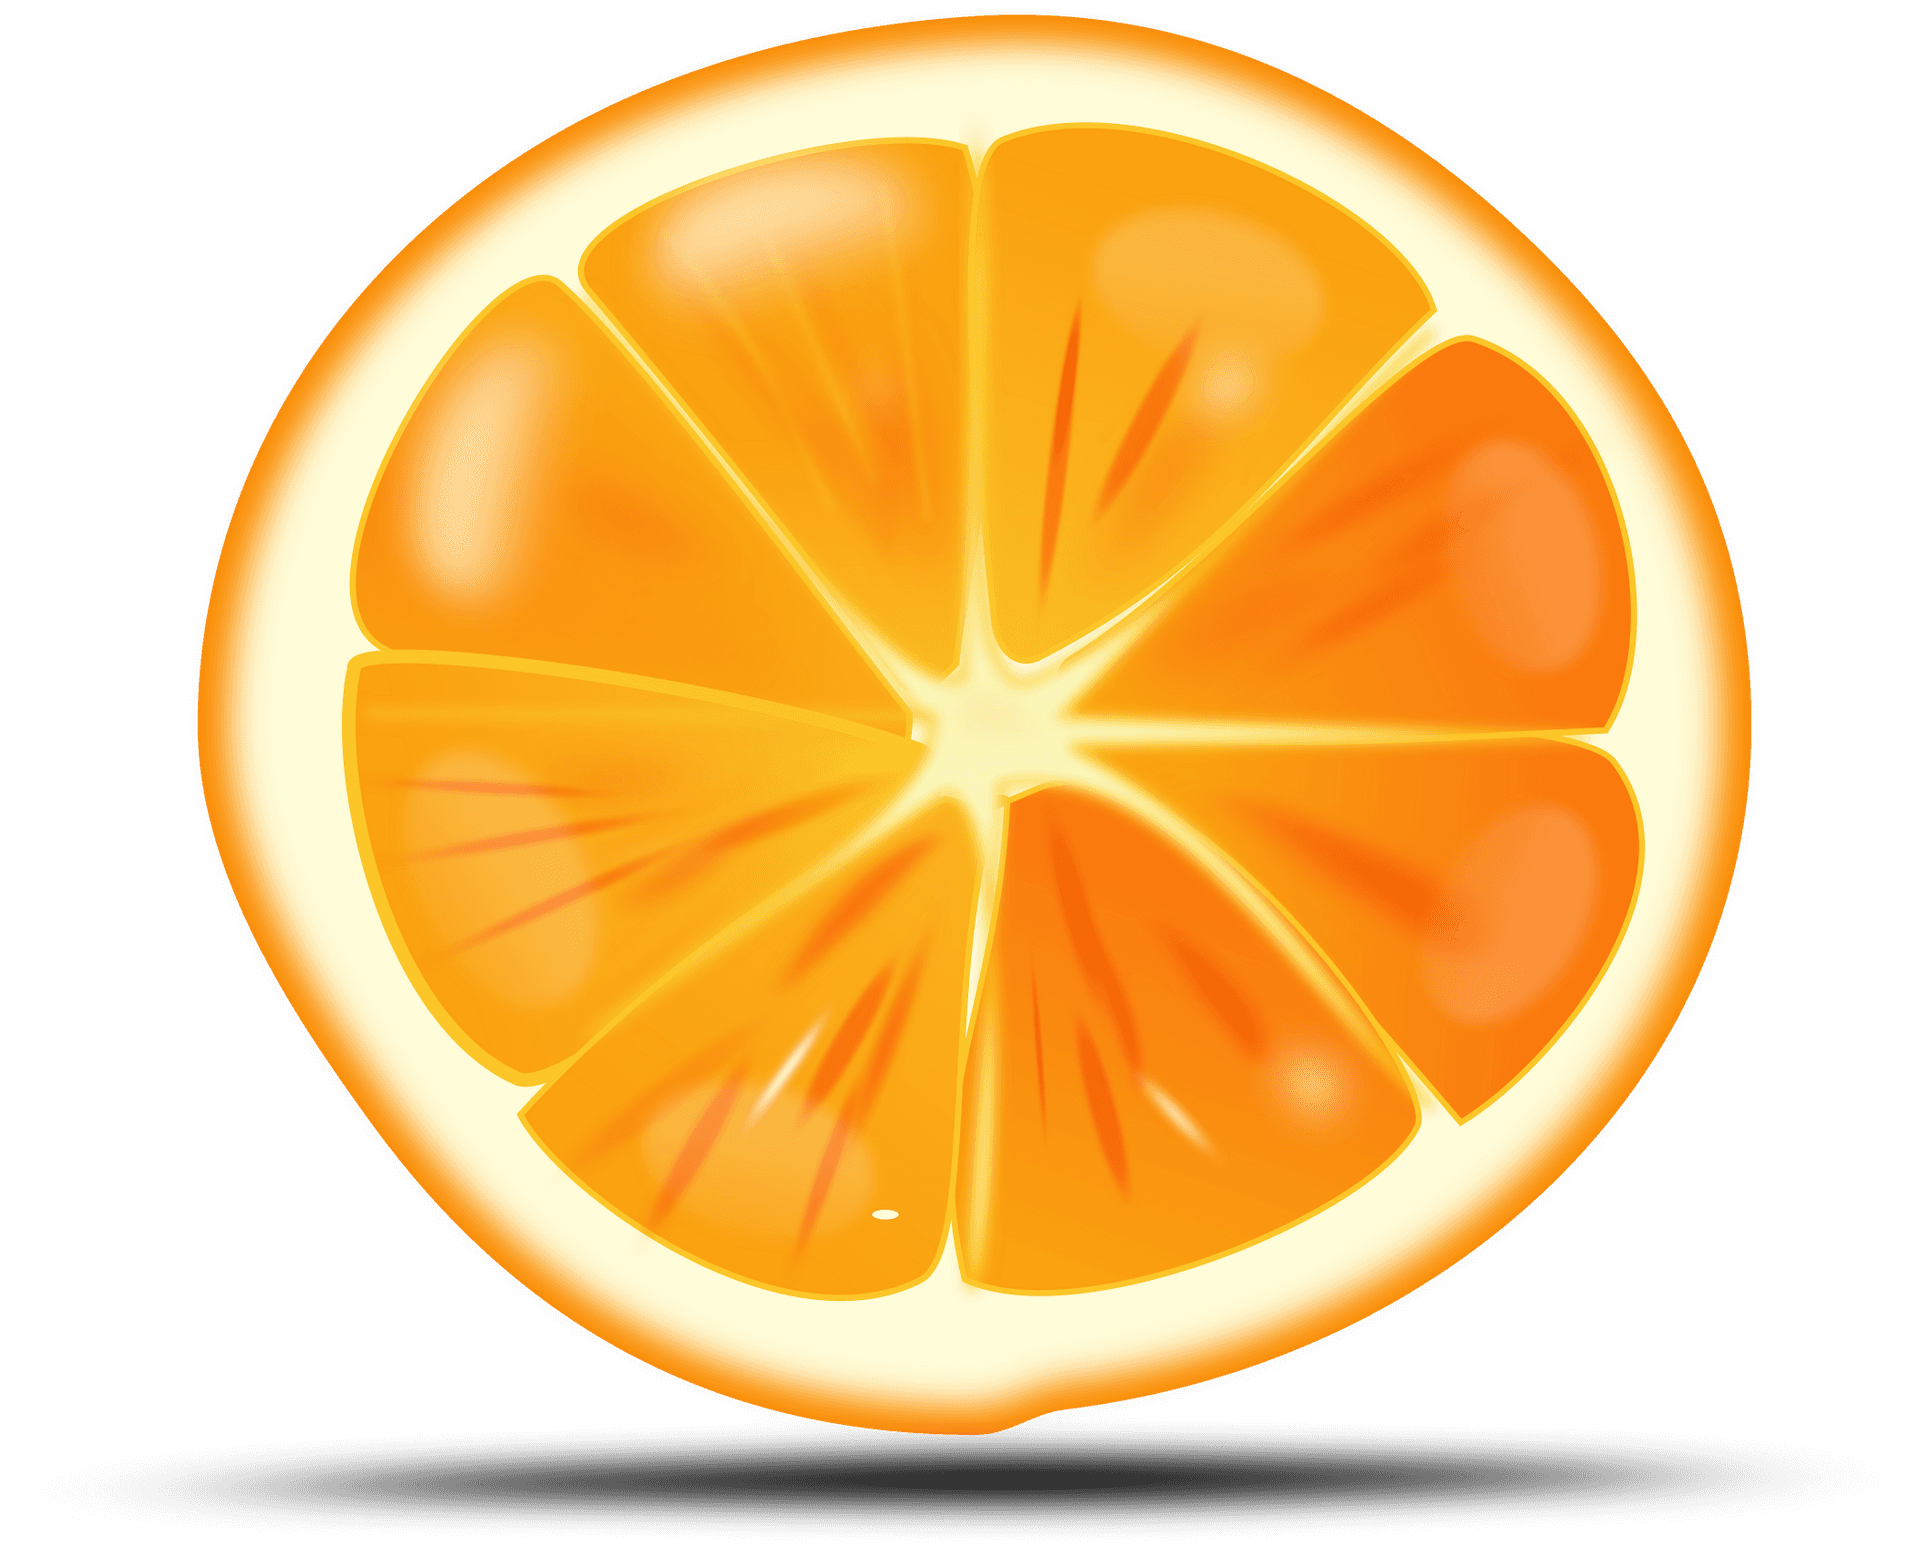 Vibrant Orange Slice Illustration PNG